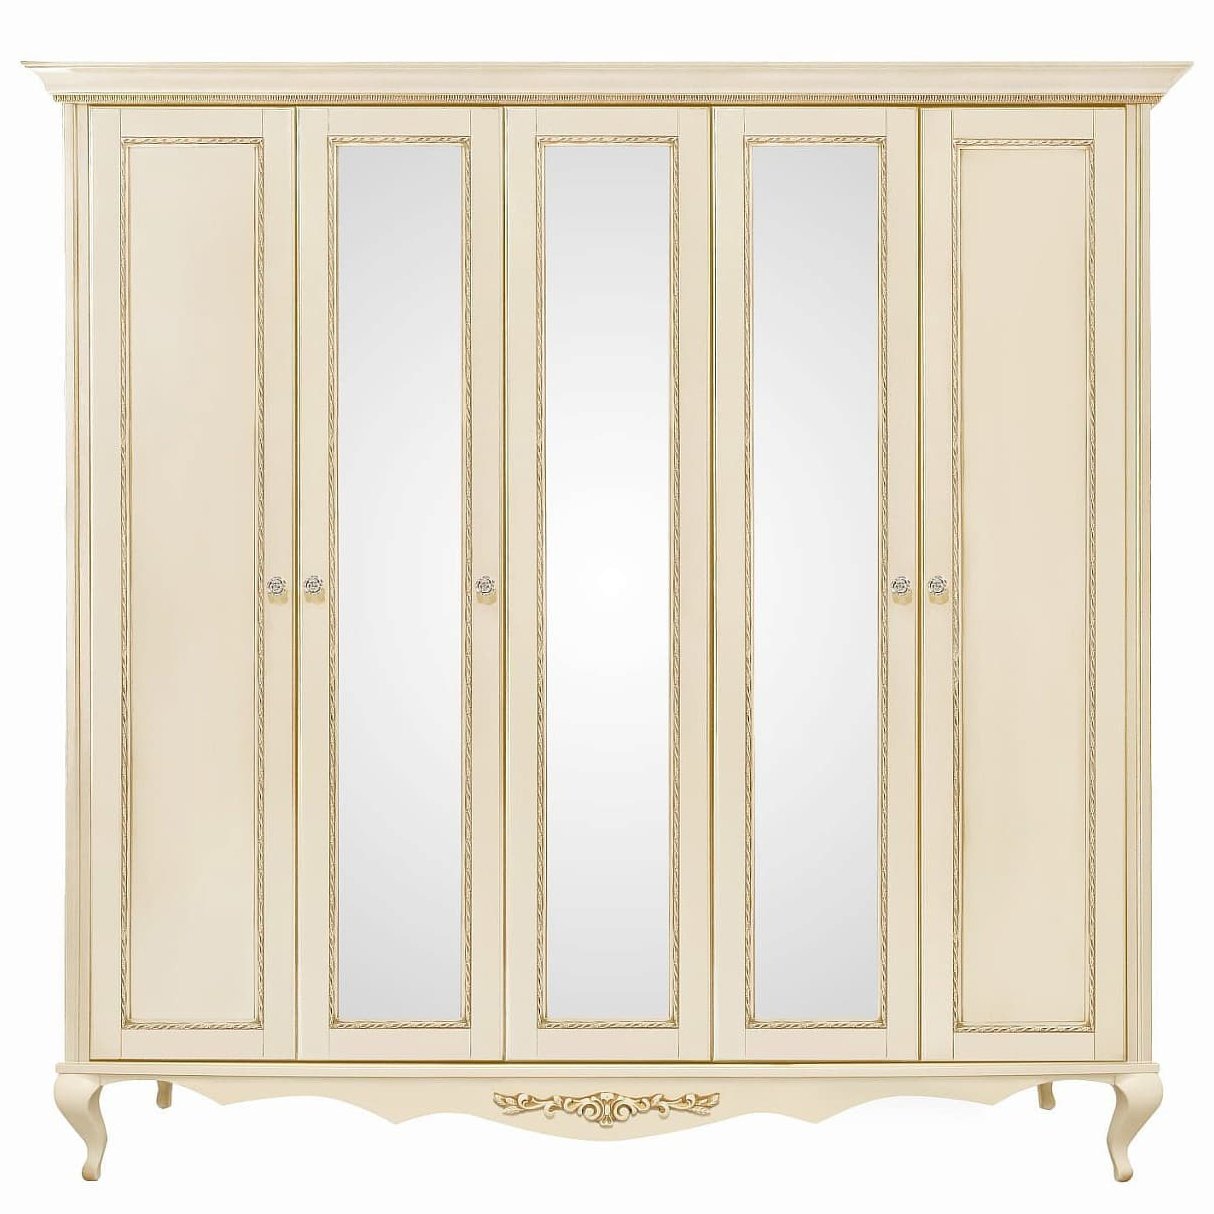 Шкаф платяной Timber Неаполь, 5-ти дверный с зеркалами 249x65x227 см, цвет: ваниль с золотом (Т-525/VO)Т-525